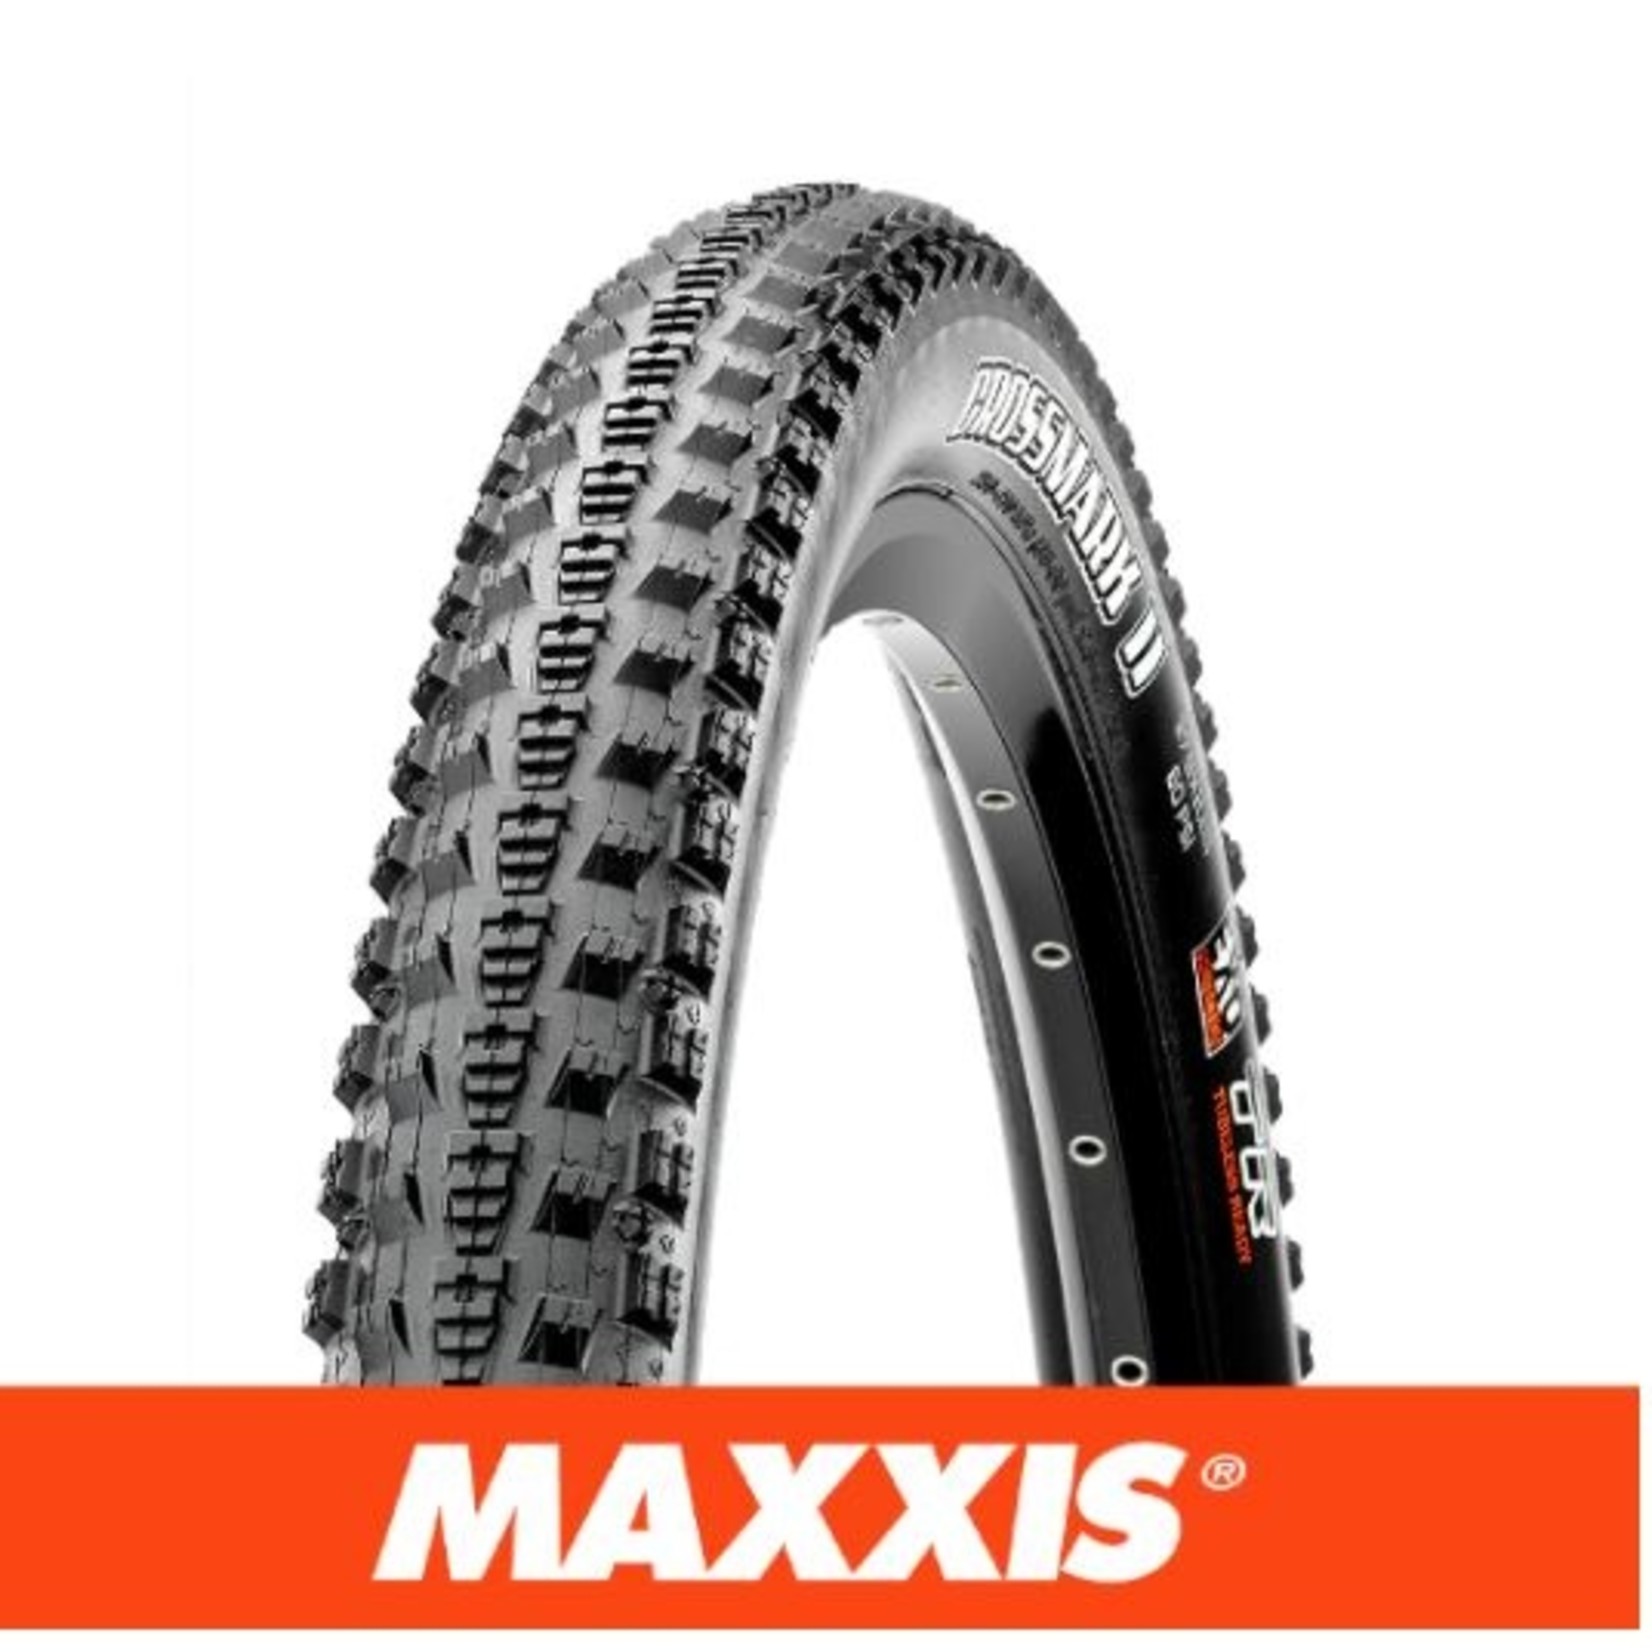 Maxxis Maxxis Crossmark II Bike Tyre - 26 X 2.25 - Folding TR Exo 120 TPI Black - Pair